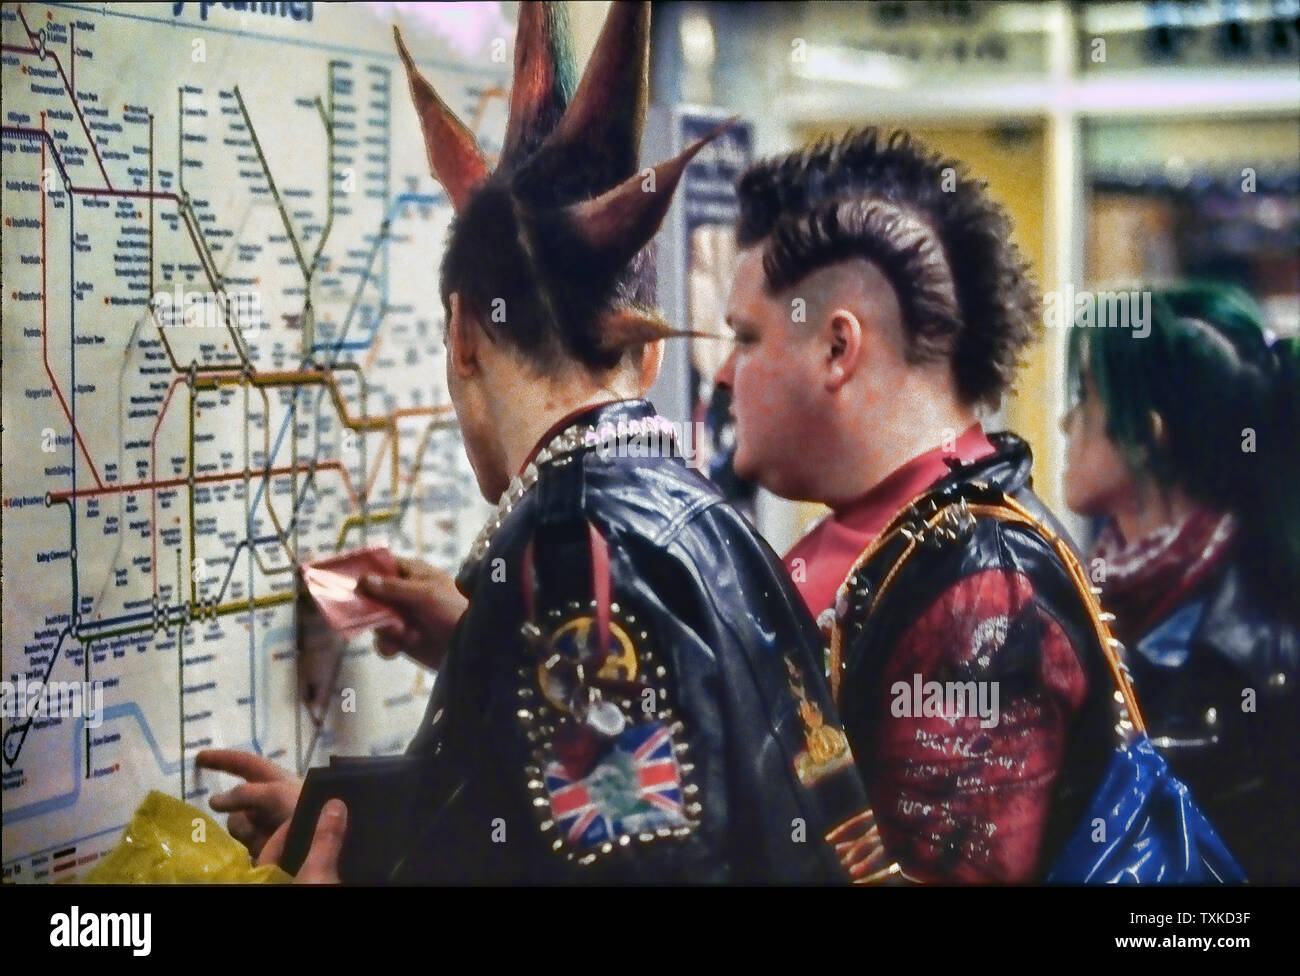 Contrôle de la carte en tube Punks métro de Londres, Angleterre, Royaume-Uni. Banque D'Images